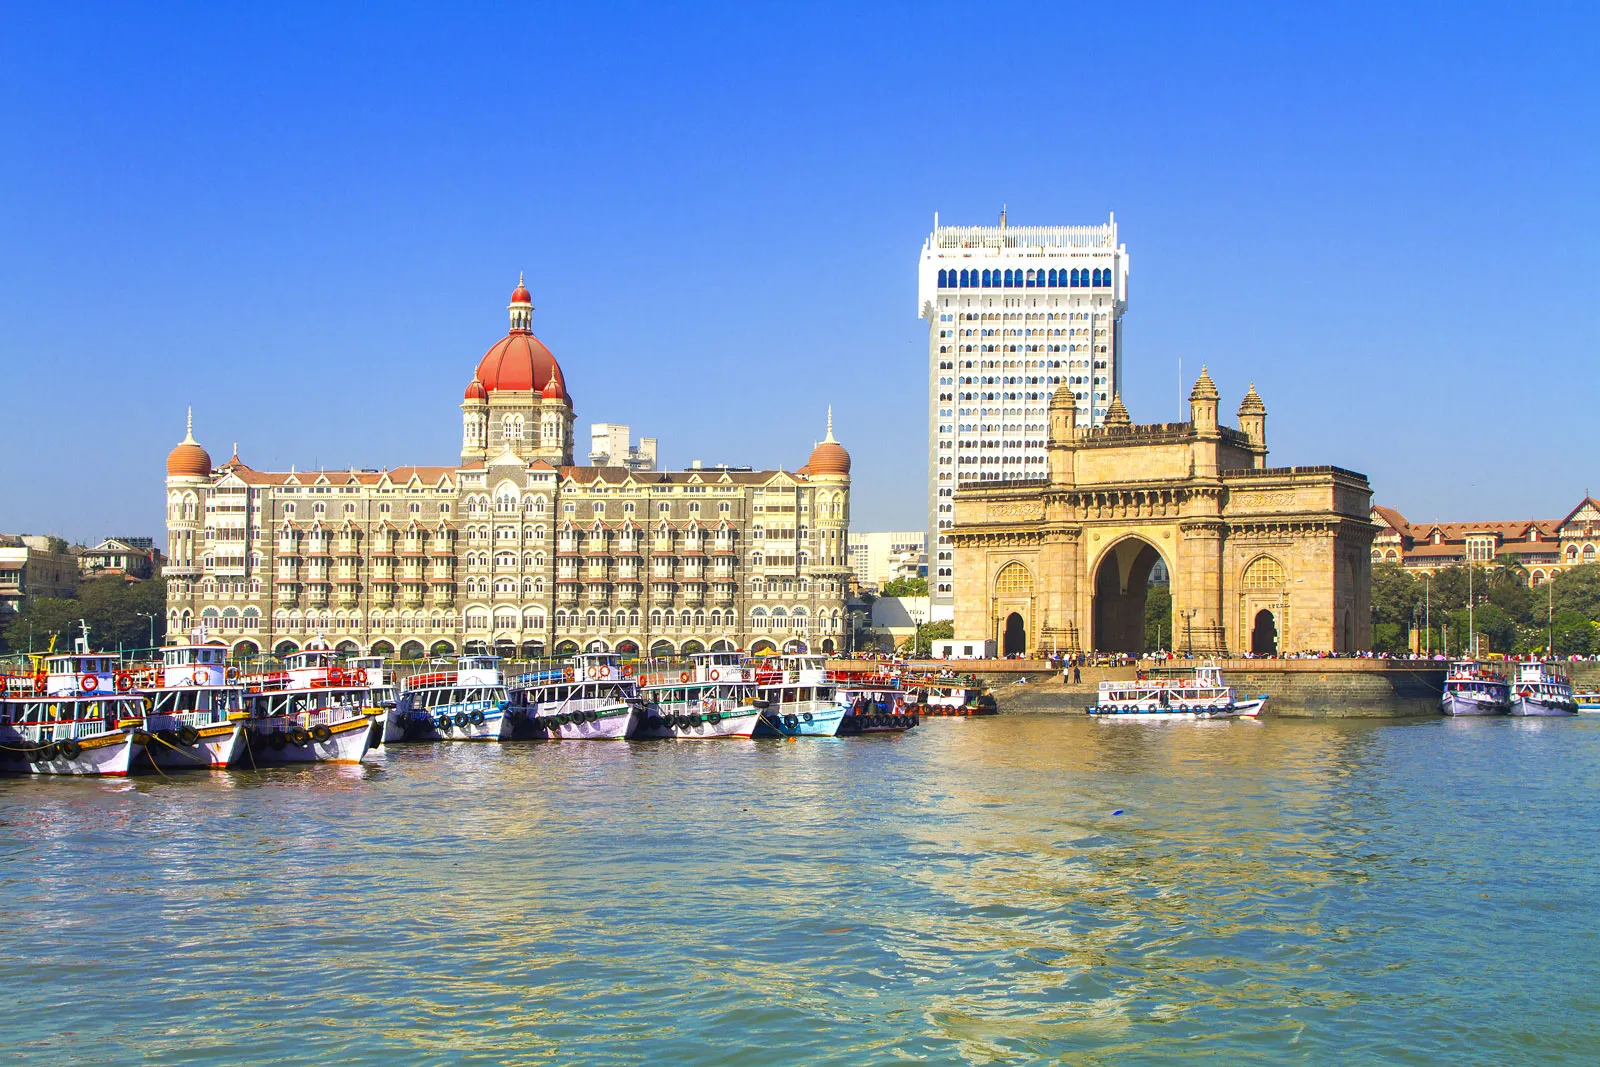 Mumbai under attack